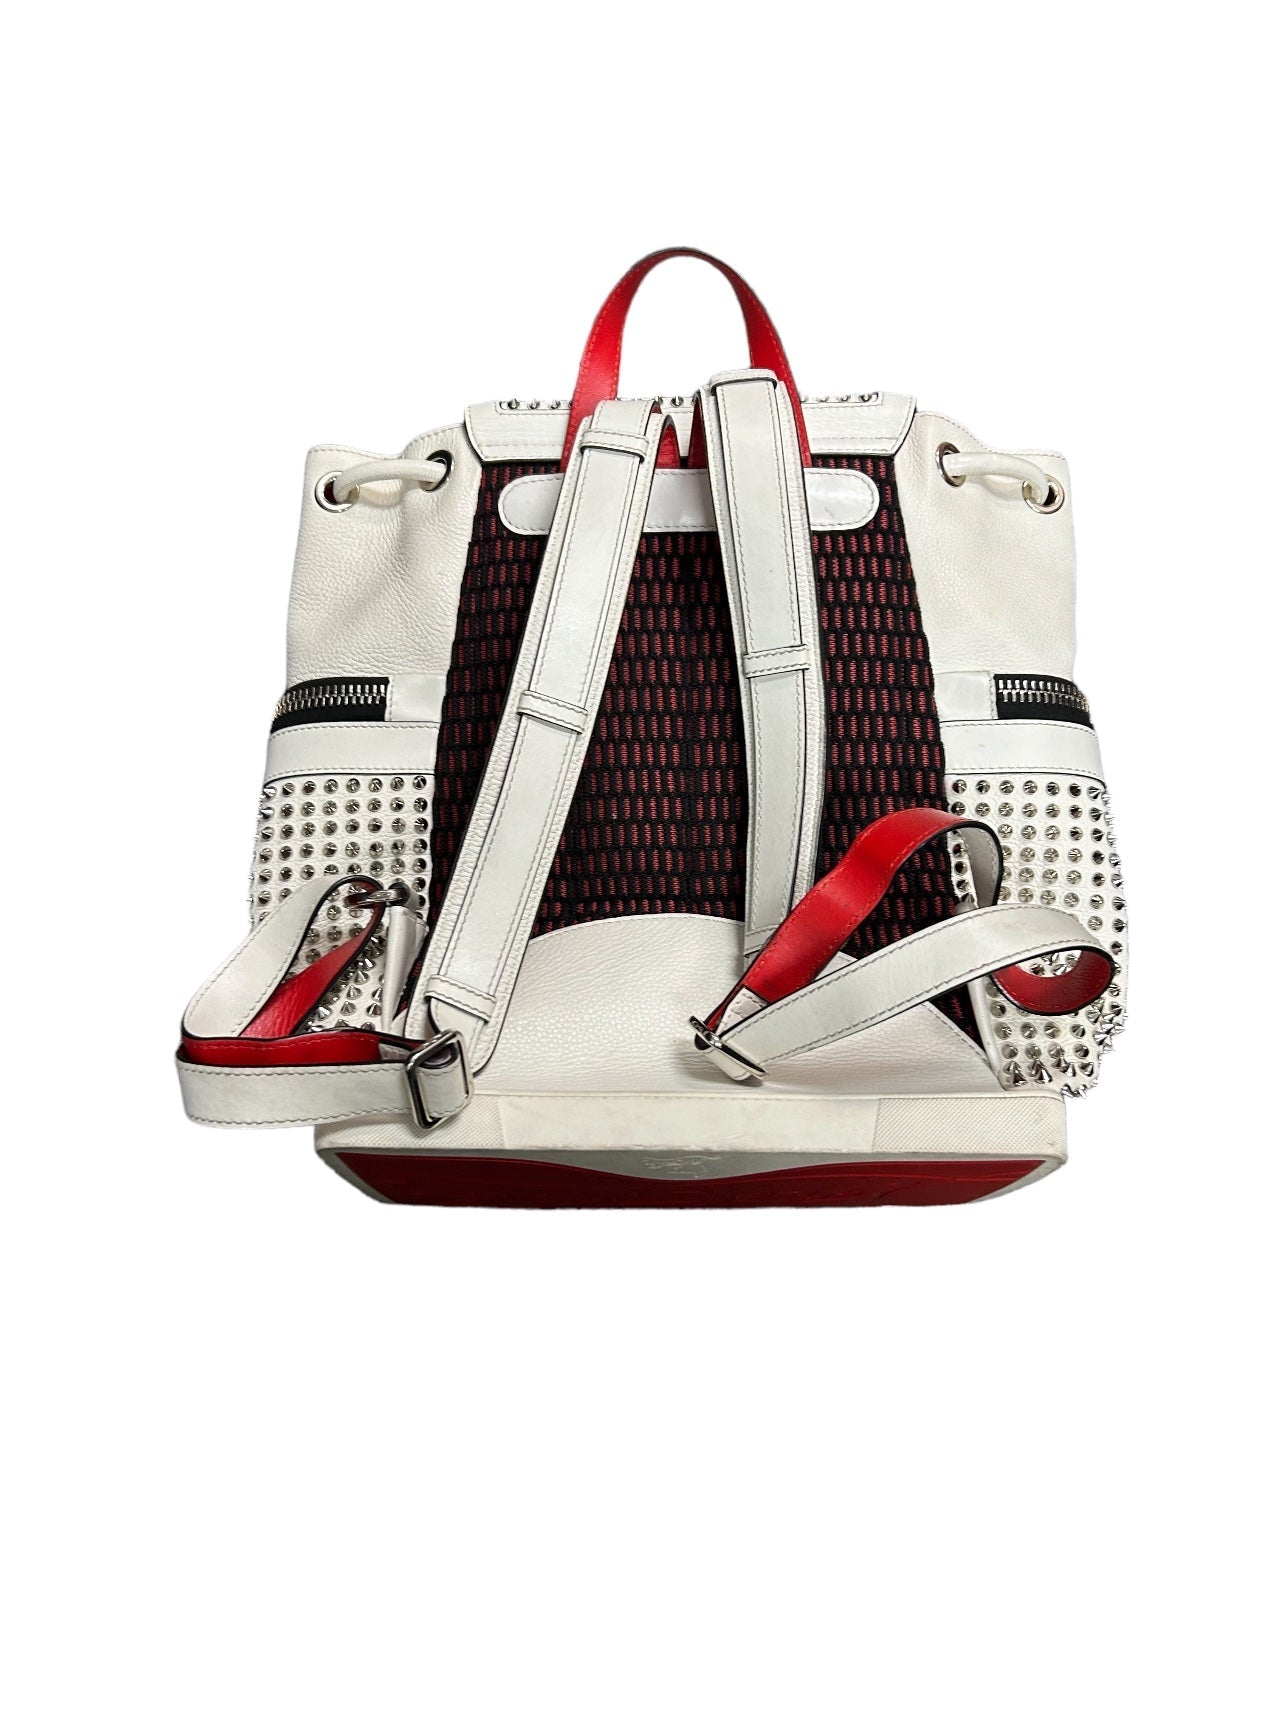 Backpack Luxury Designer Christian Louboutin, Size Large